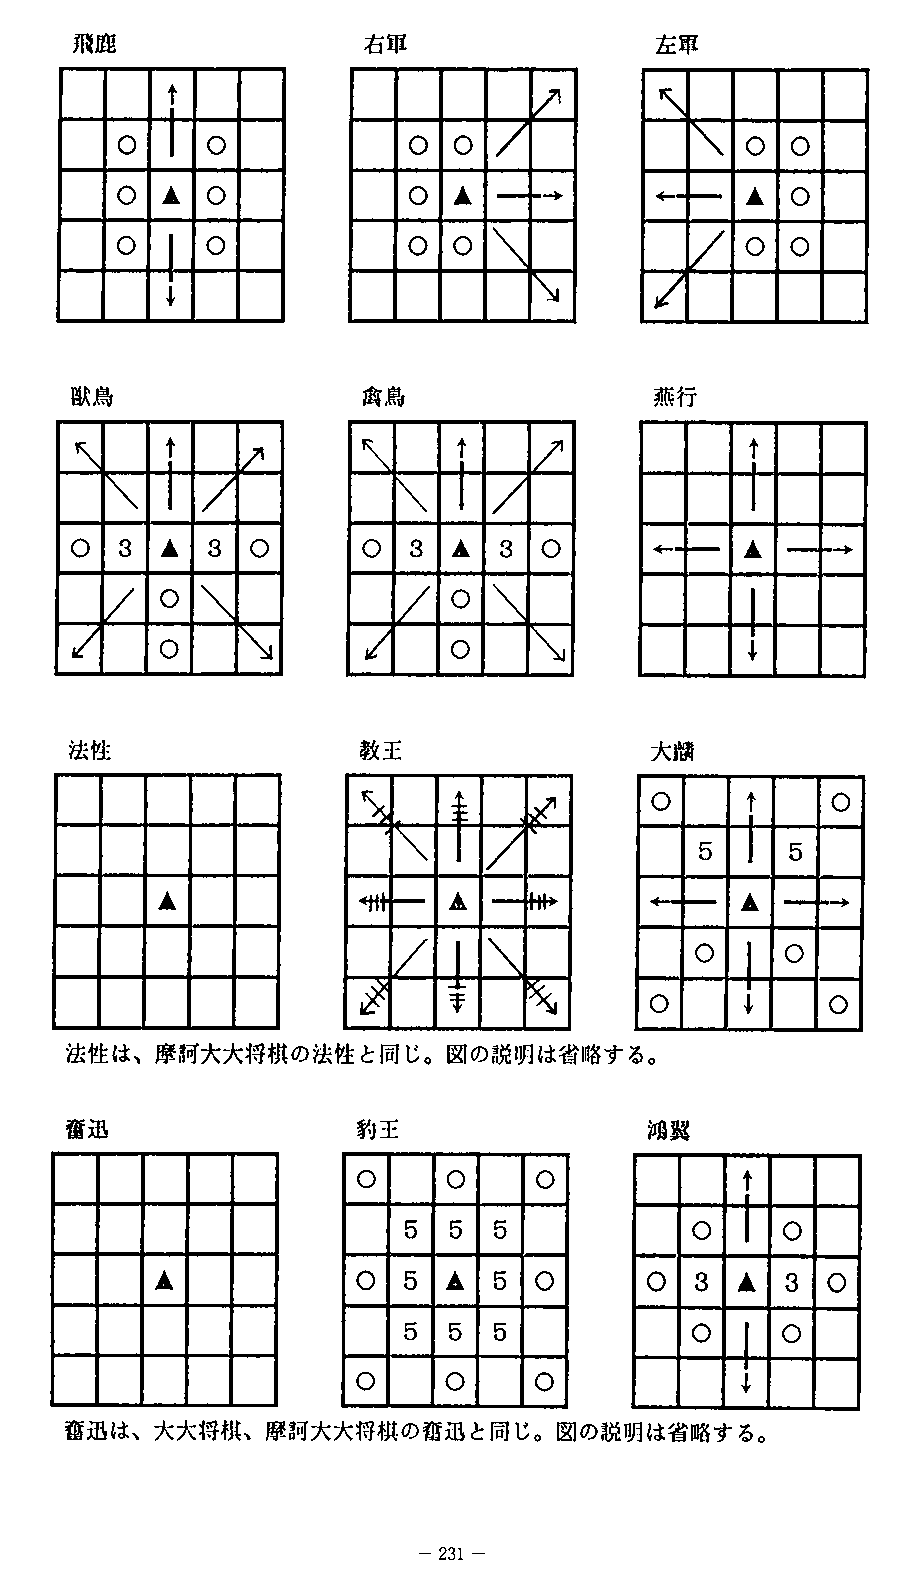 Taikyoku shogi - Wikipedia